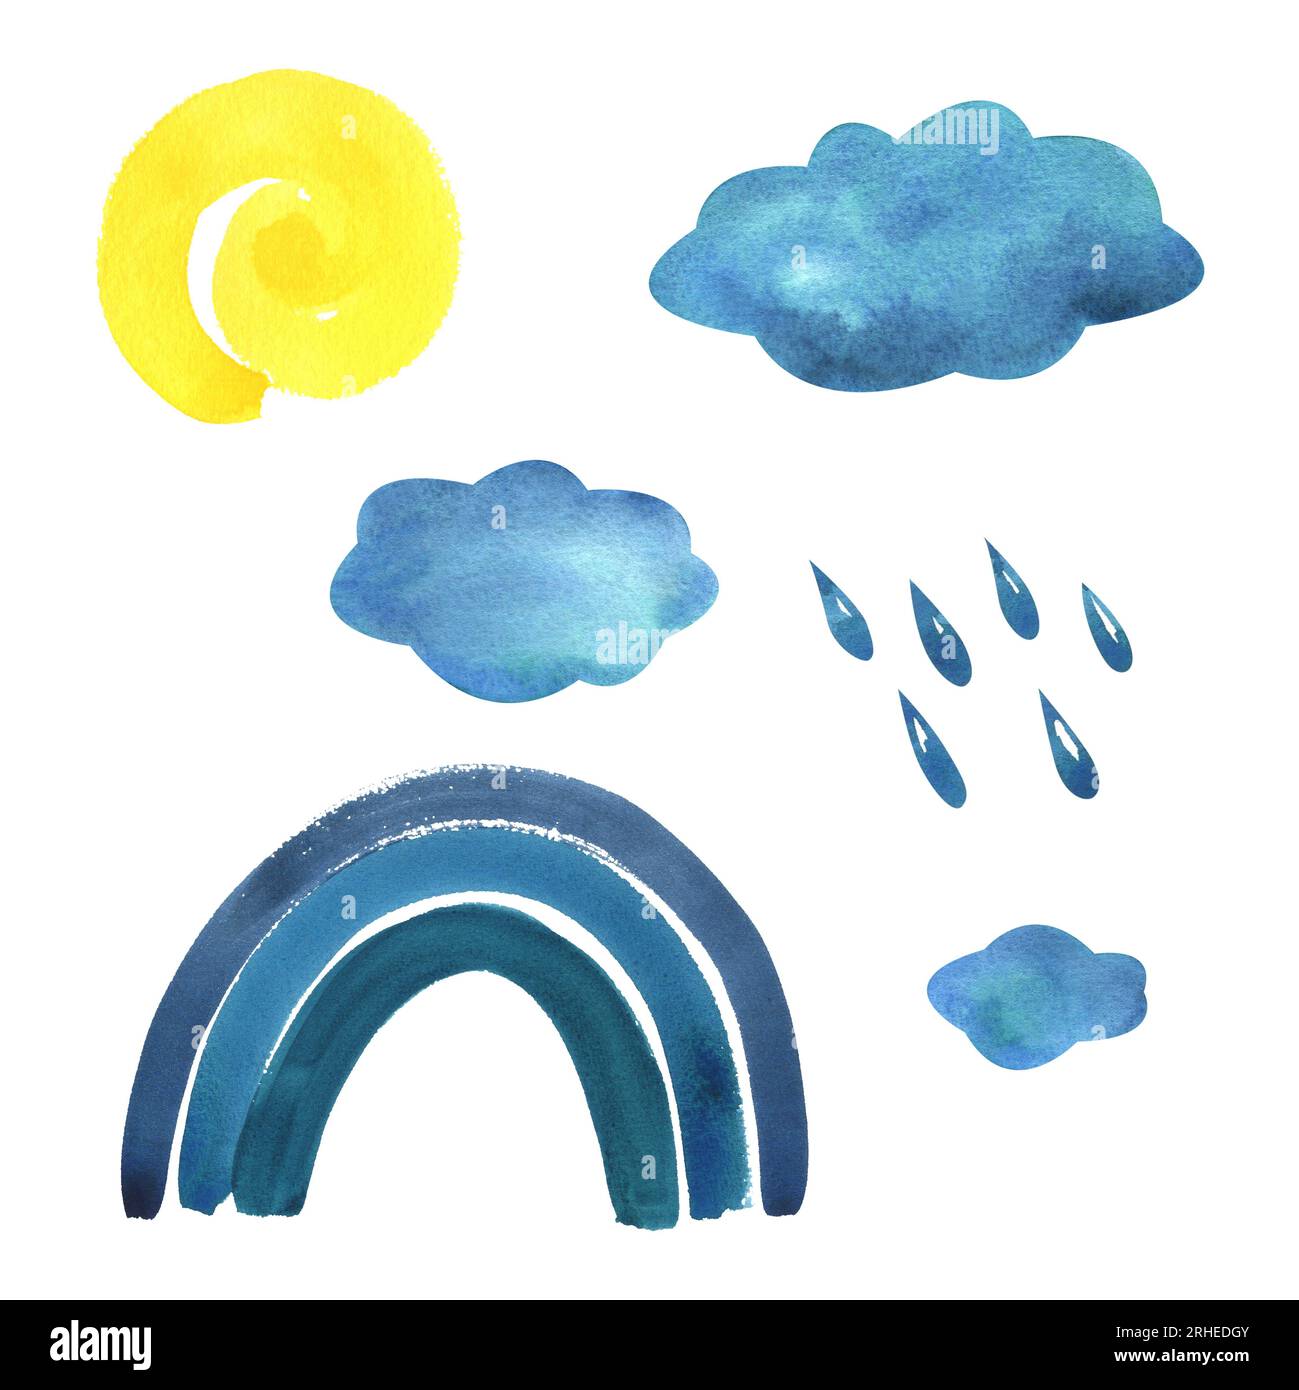 Bleu, arc-en-ciel turquoise, nuages avec gouttes de pluie et soleil spirale jaune. Illustration d'aquarelle dessinée à la main dans le style des enfants pour les affiches, les cartes Banque D'Images